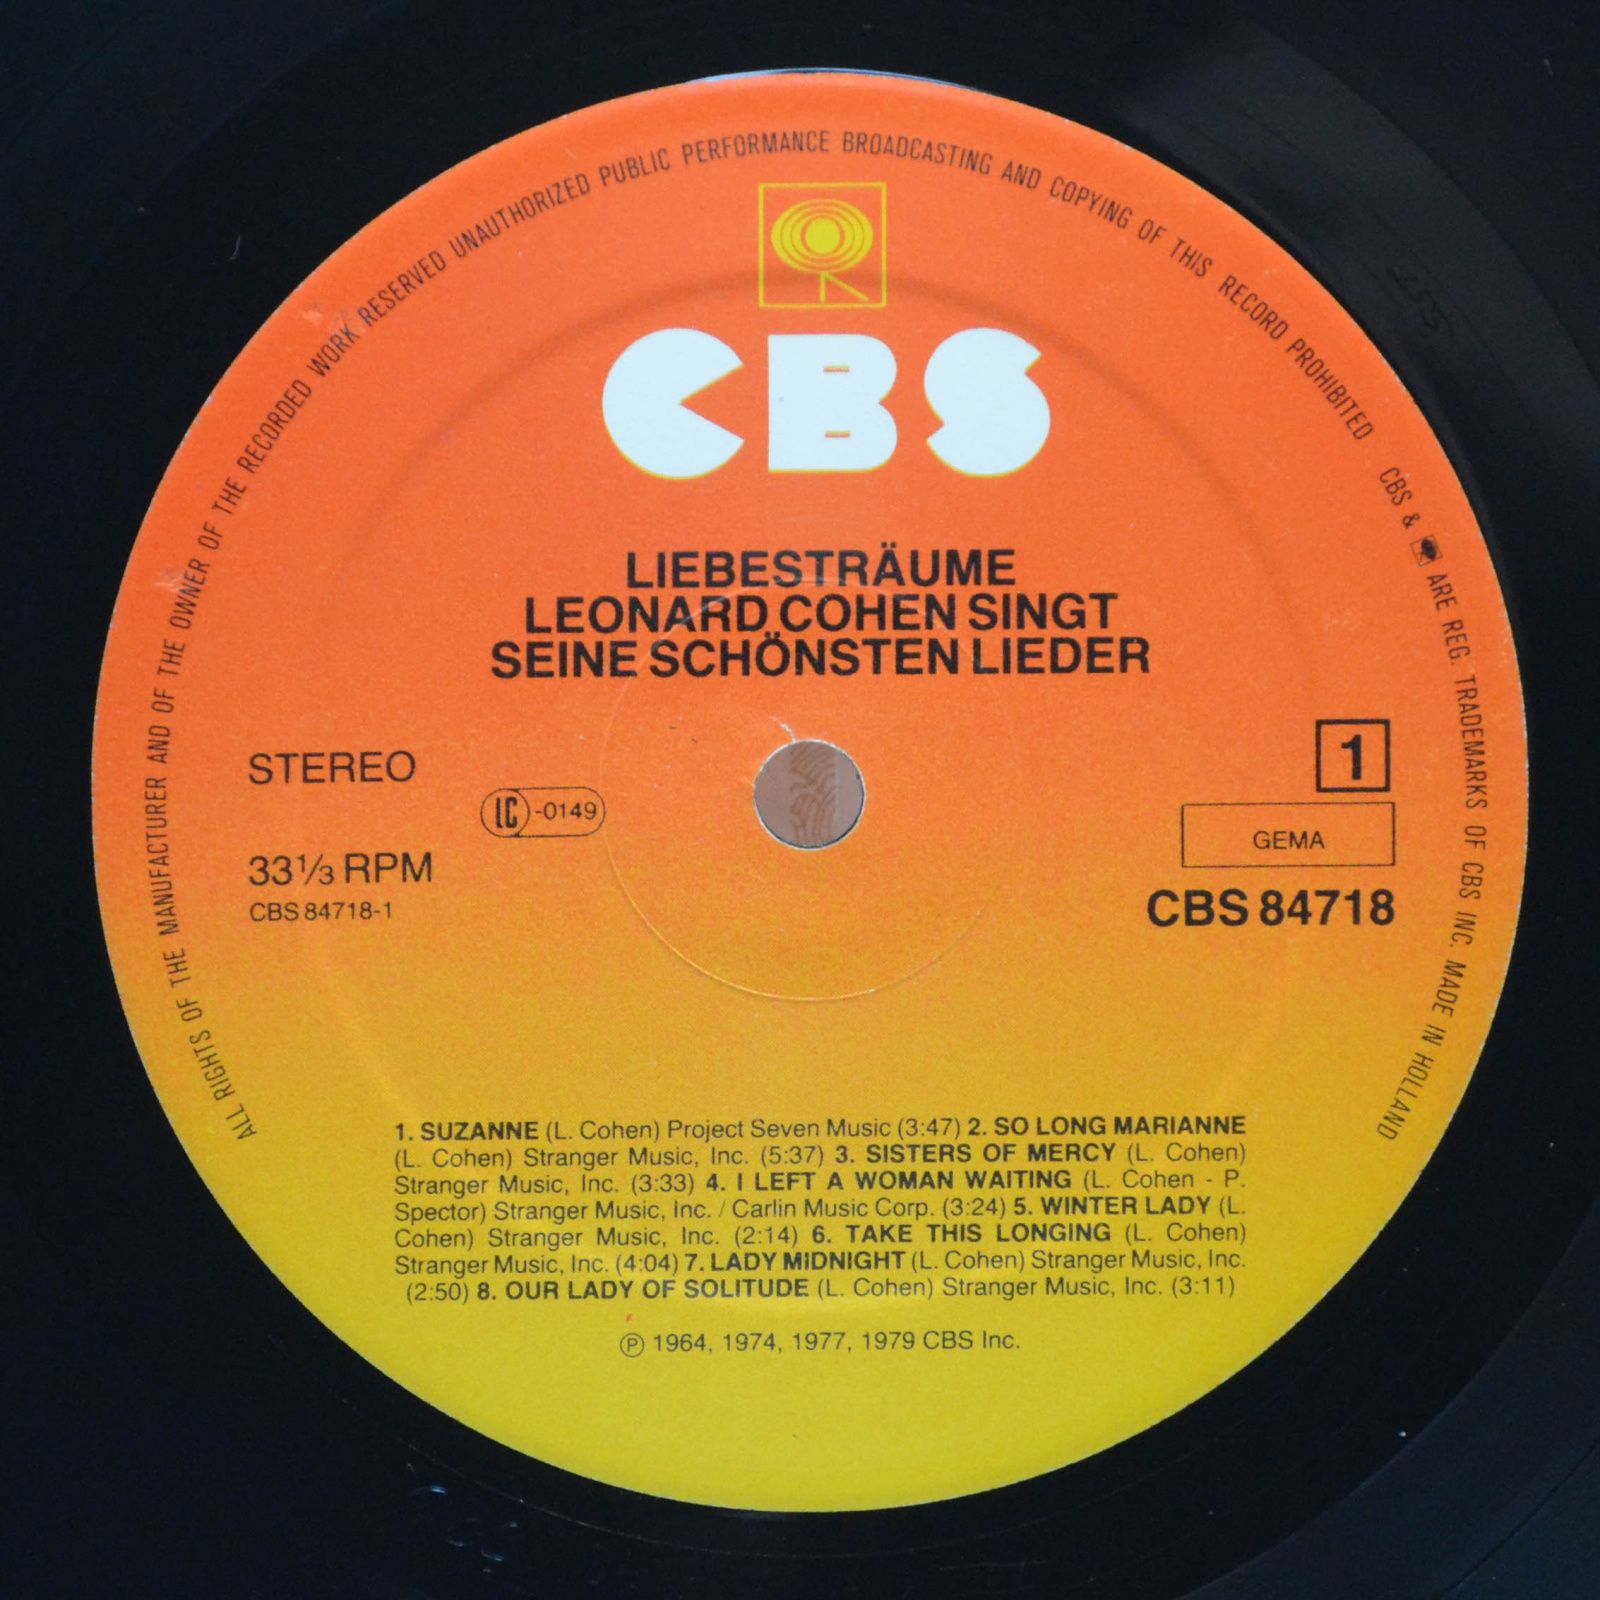 Leonard Cohen — Liebesträume (Leonard Cohen Singt Seine Schönsten Lieder), 1980